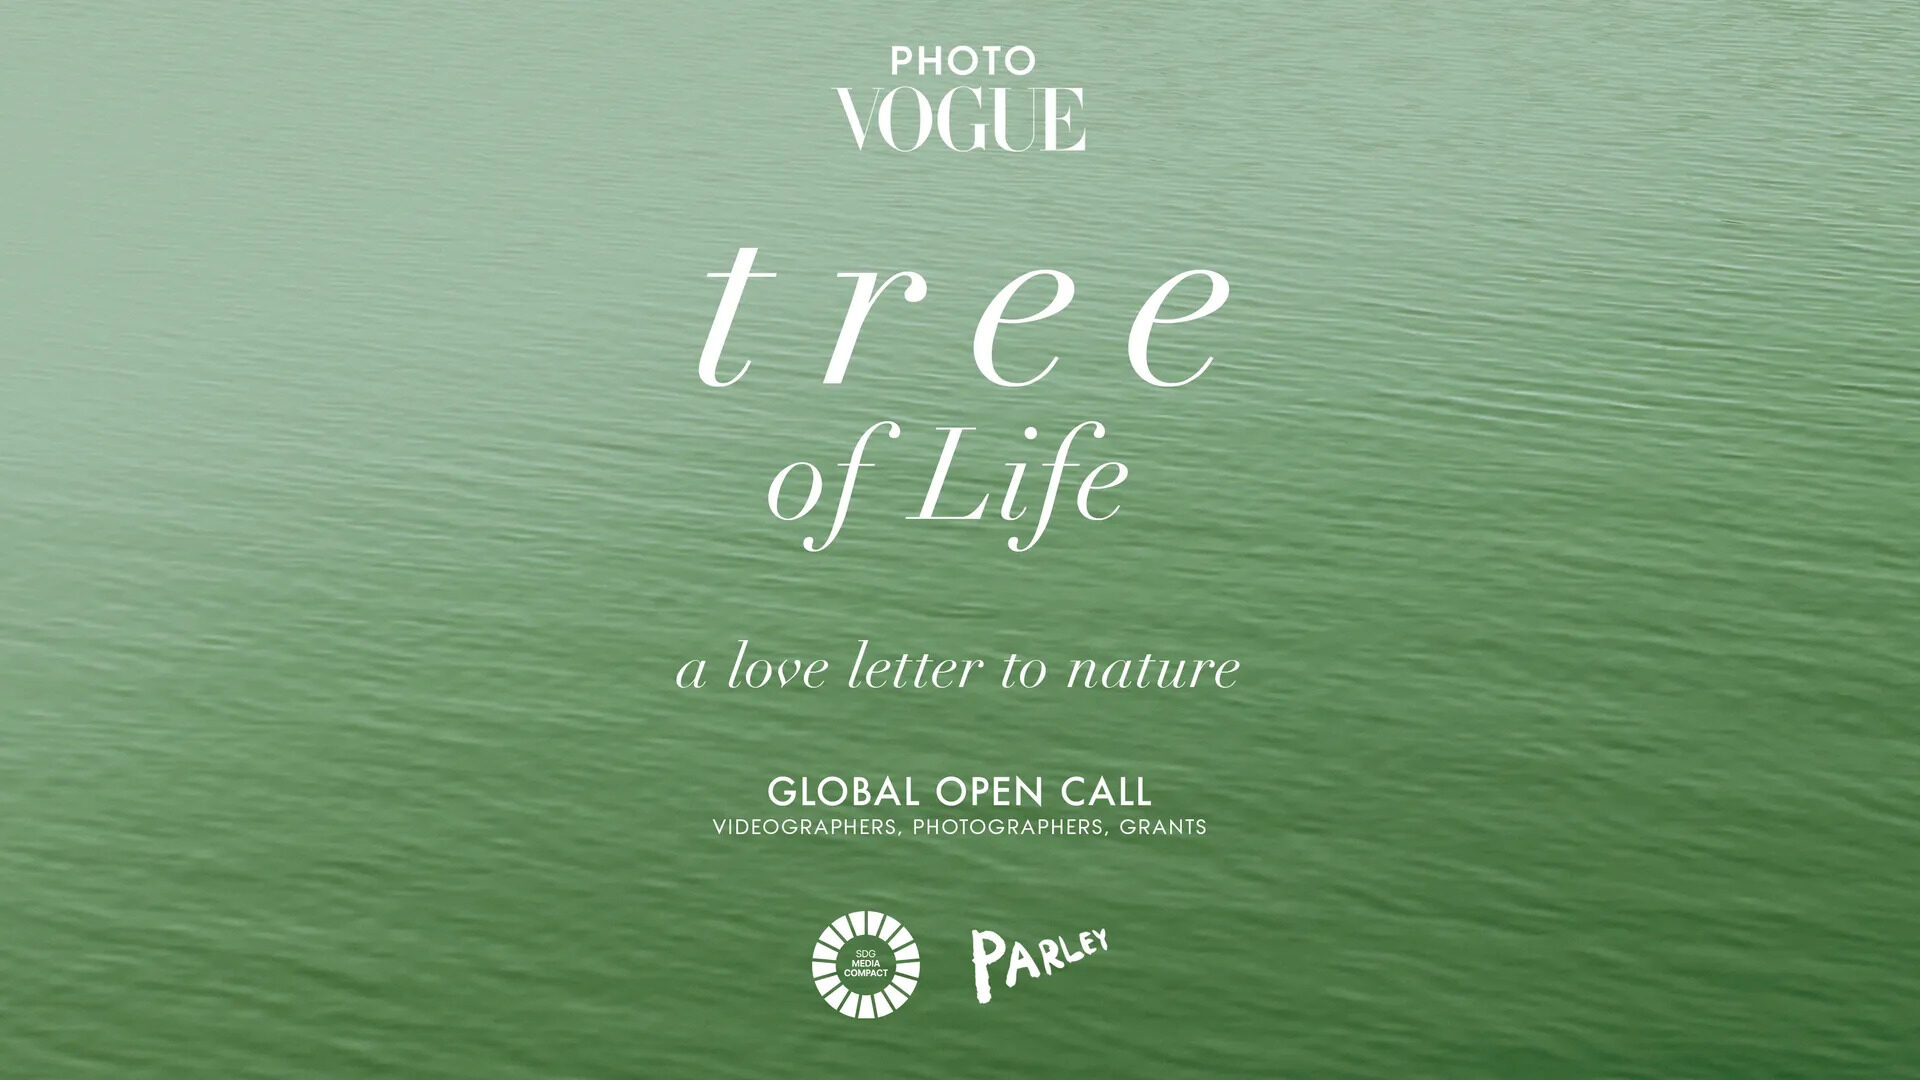 ‘포토보그’의 글로벌 오픈 콜, 생명의 나무: 자연에 보내는 러브 레터